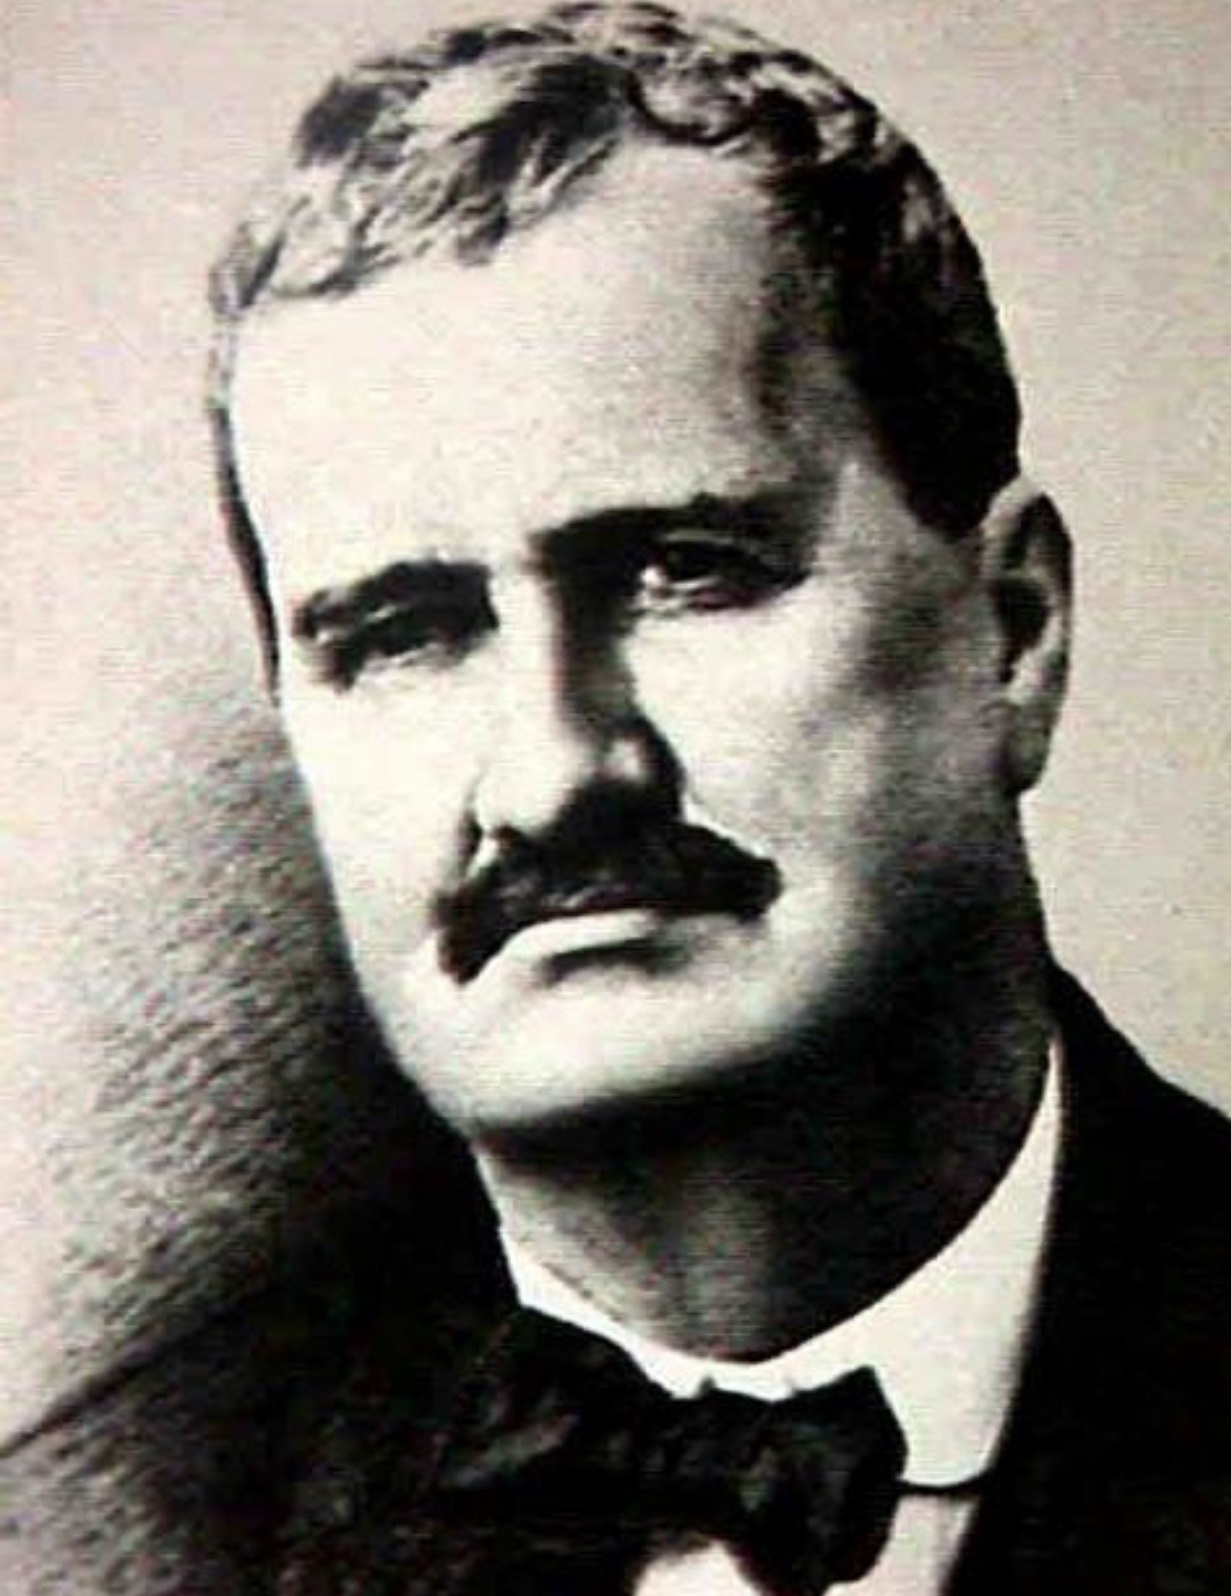 En 1897, el ingeniero caraqueño Ricardo Zuloaga (1867-1932) construyó la estación El Encantado, primera central hidroeléctrica que suministro energía eléctrica a la ciudad de Caracas.